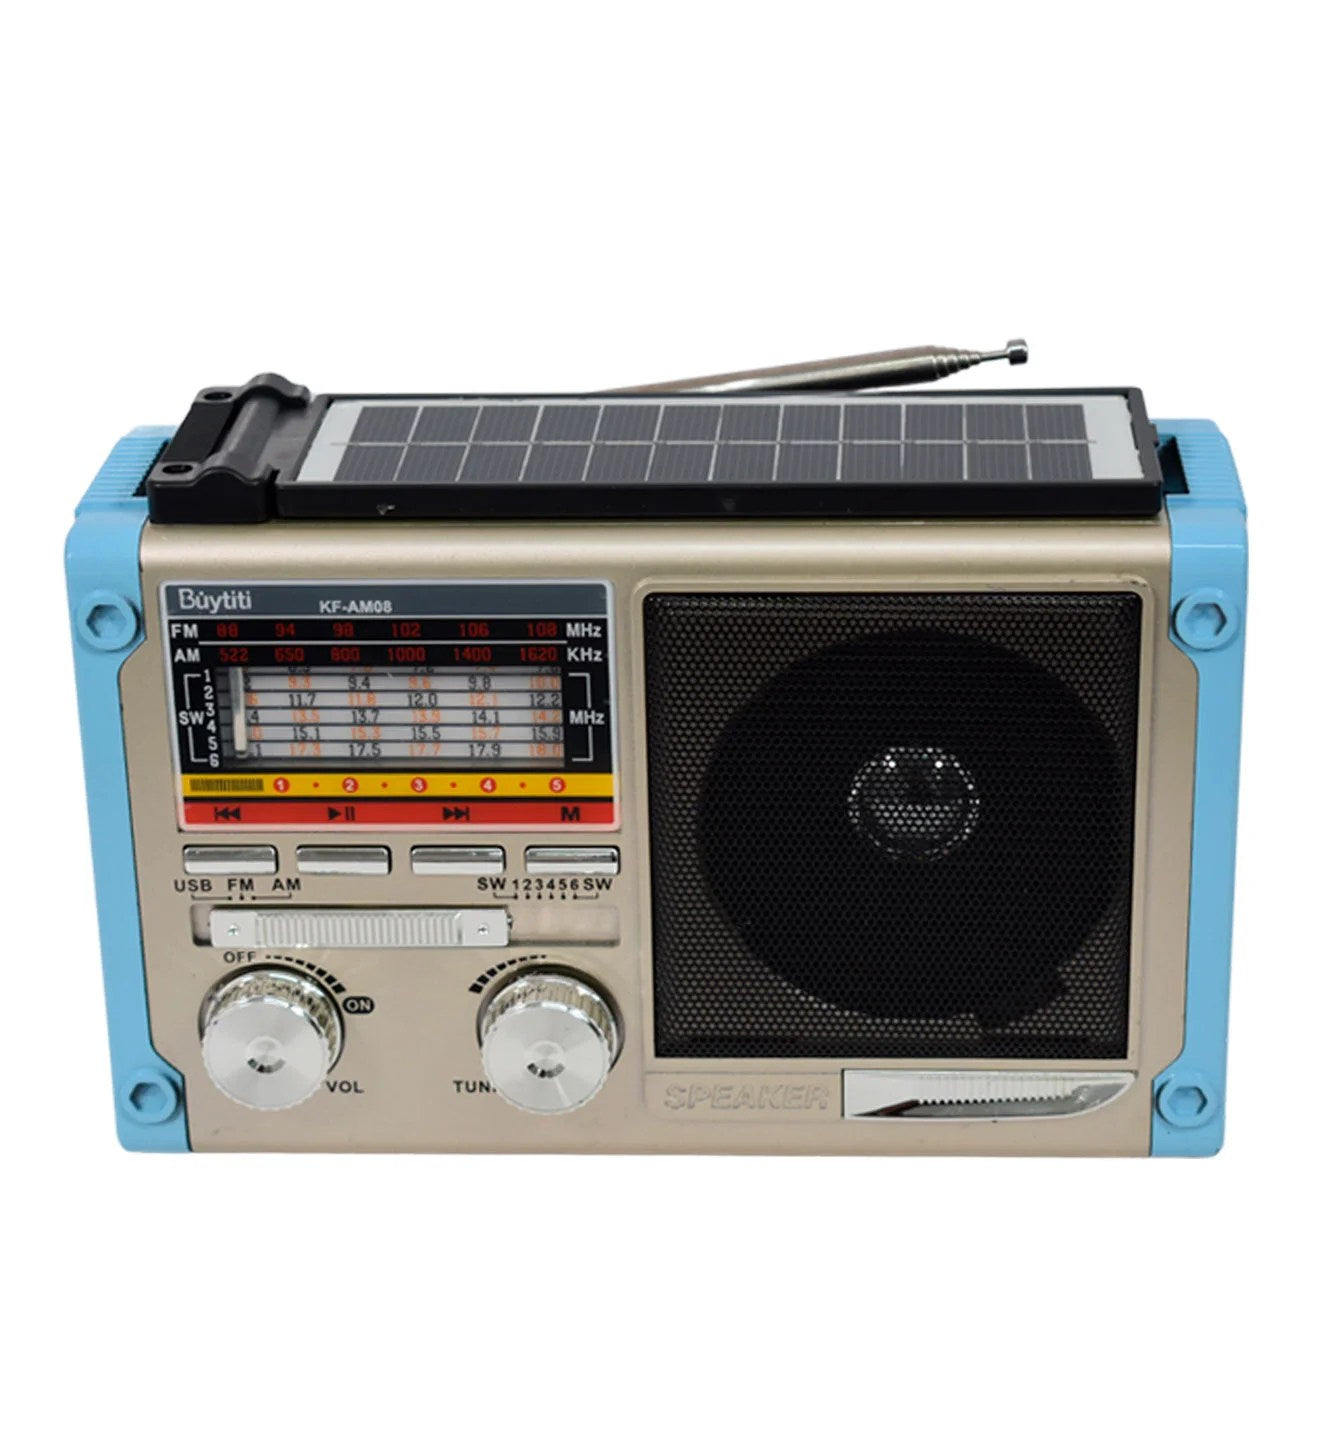 Radio solar buytiti AM/FM KF-AM08 – Mishop